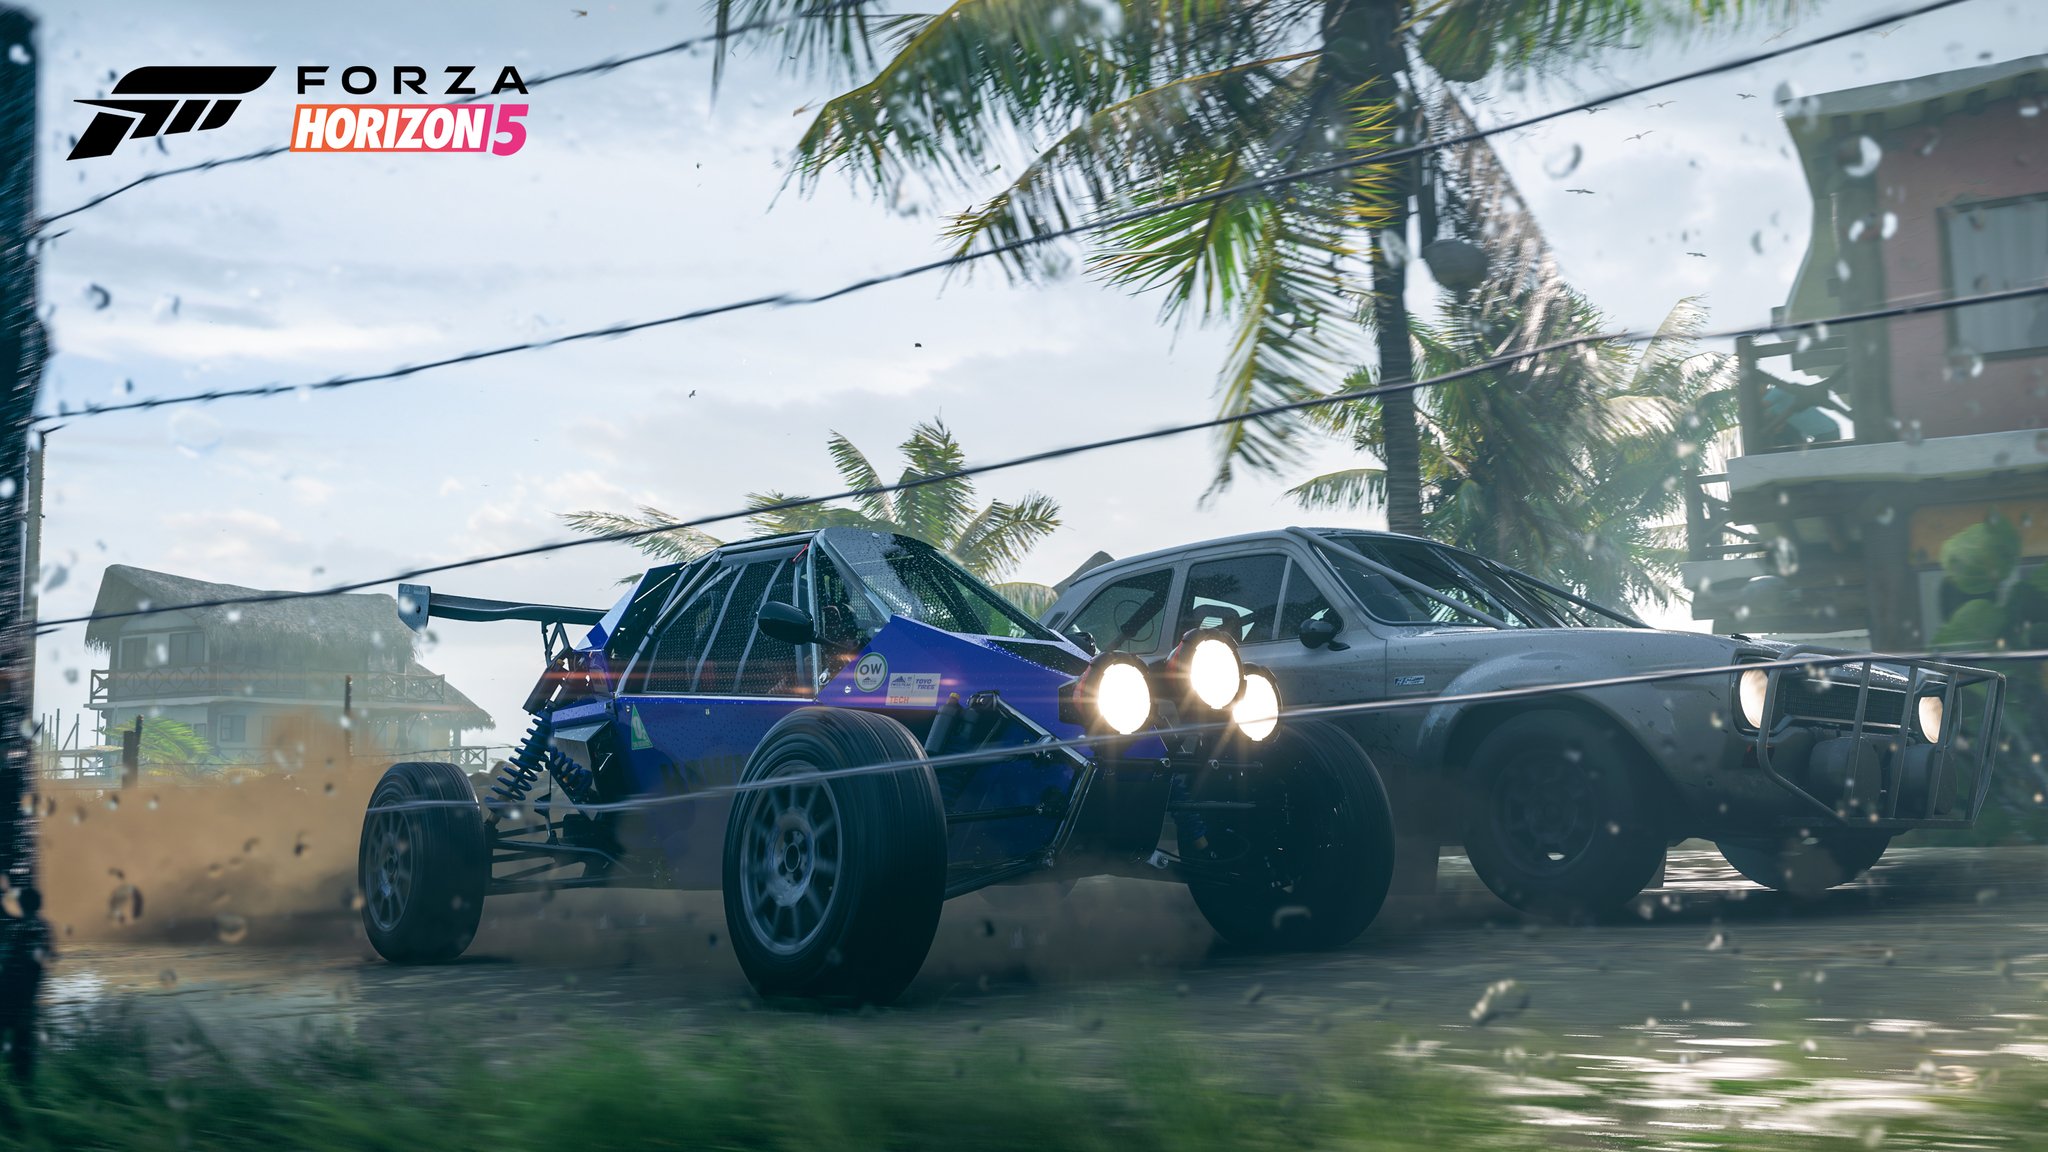 Скриншот Forza Horizon 5, на котором изображены две гоночные машины.